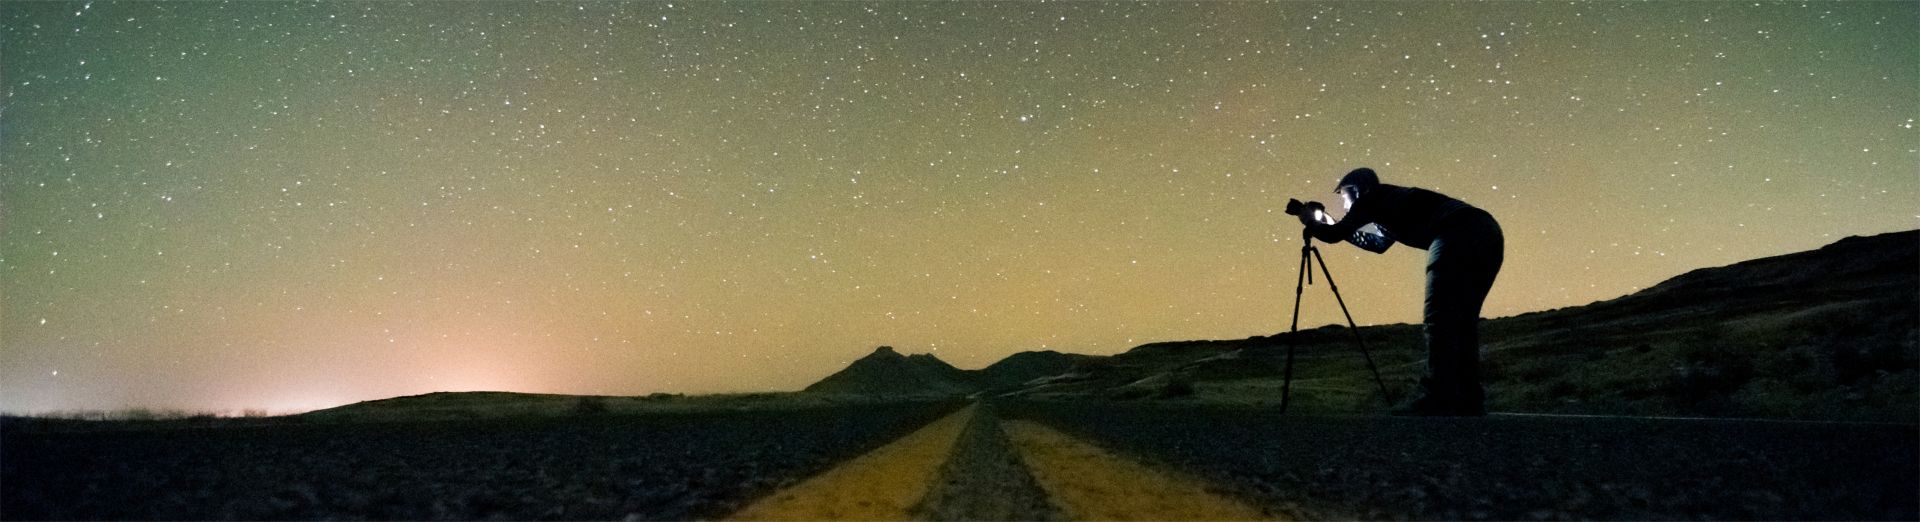 写真：SAP Road Map Explorer を表す、カメラを持って星を探検する男性